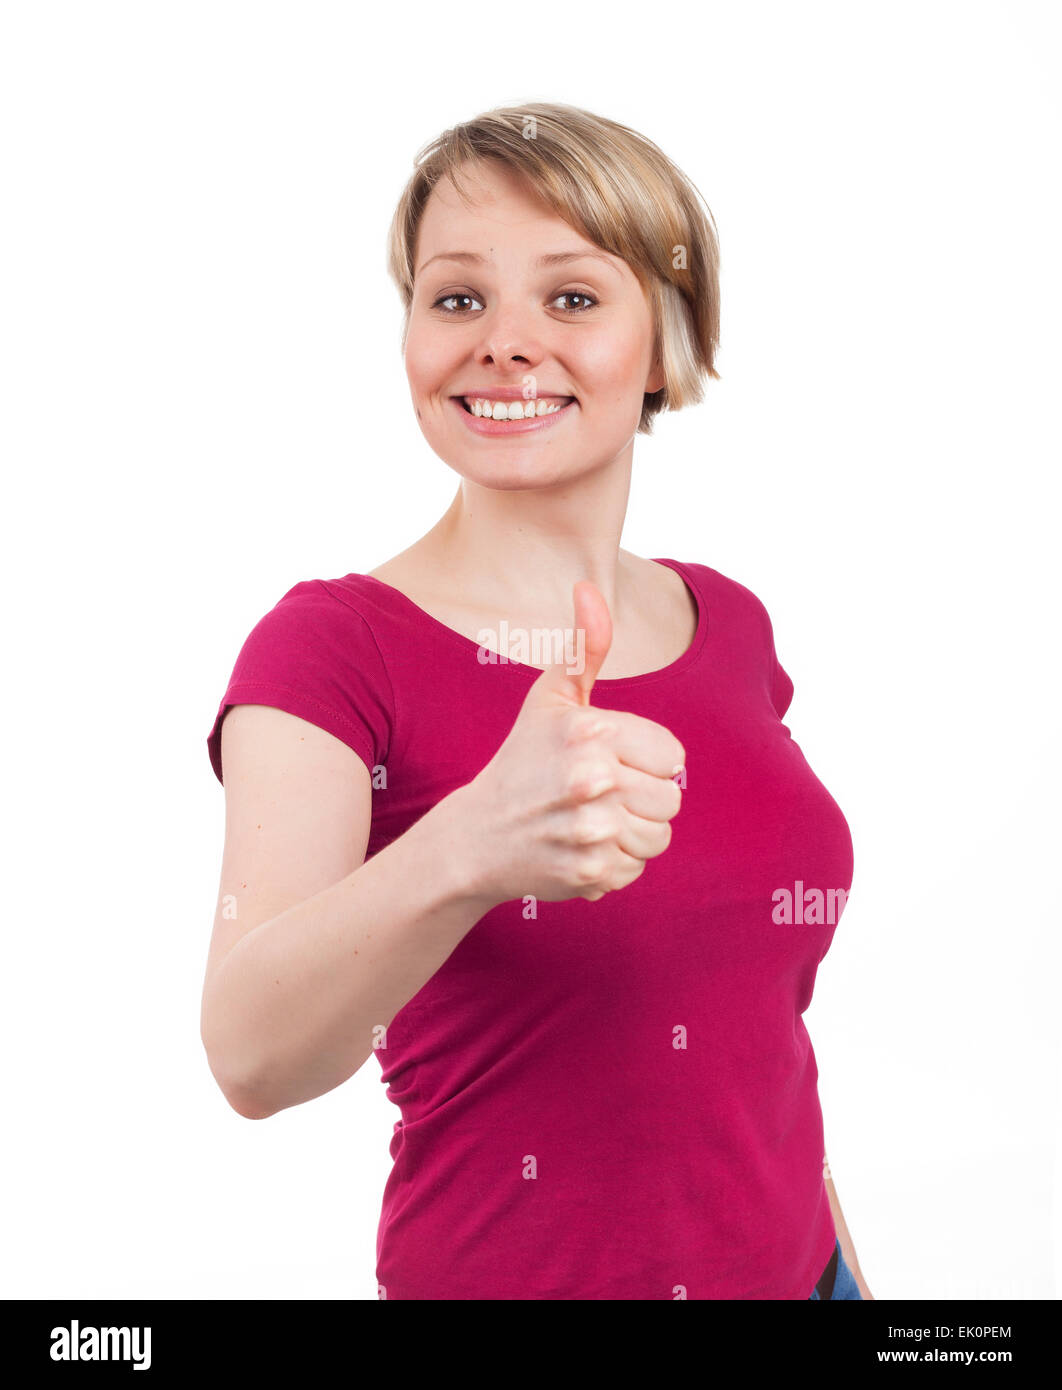 Mujer joven mostrando su pulgar hacia arriba en una actitud confiada, aislado en blanco Foto de stock